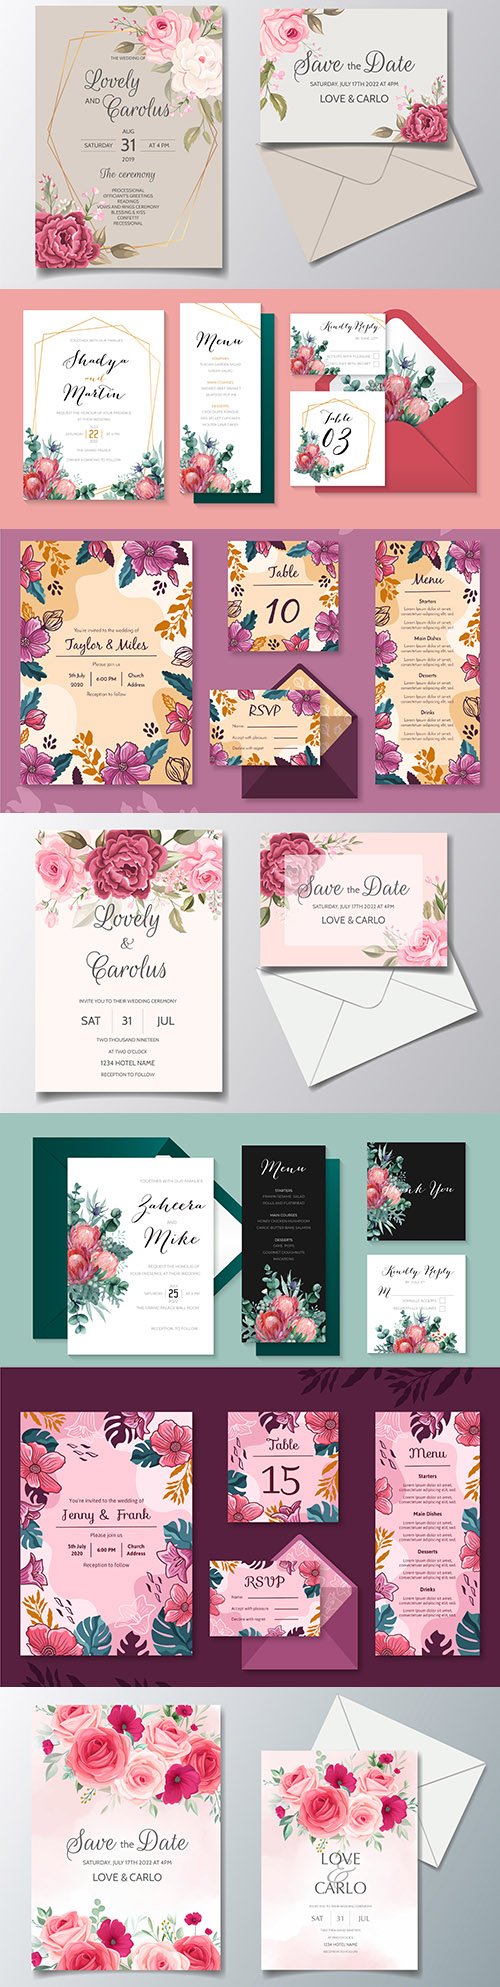 Elegant wedding invitation template flowers and leaves